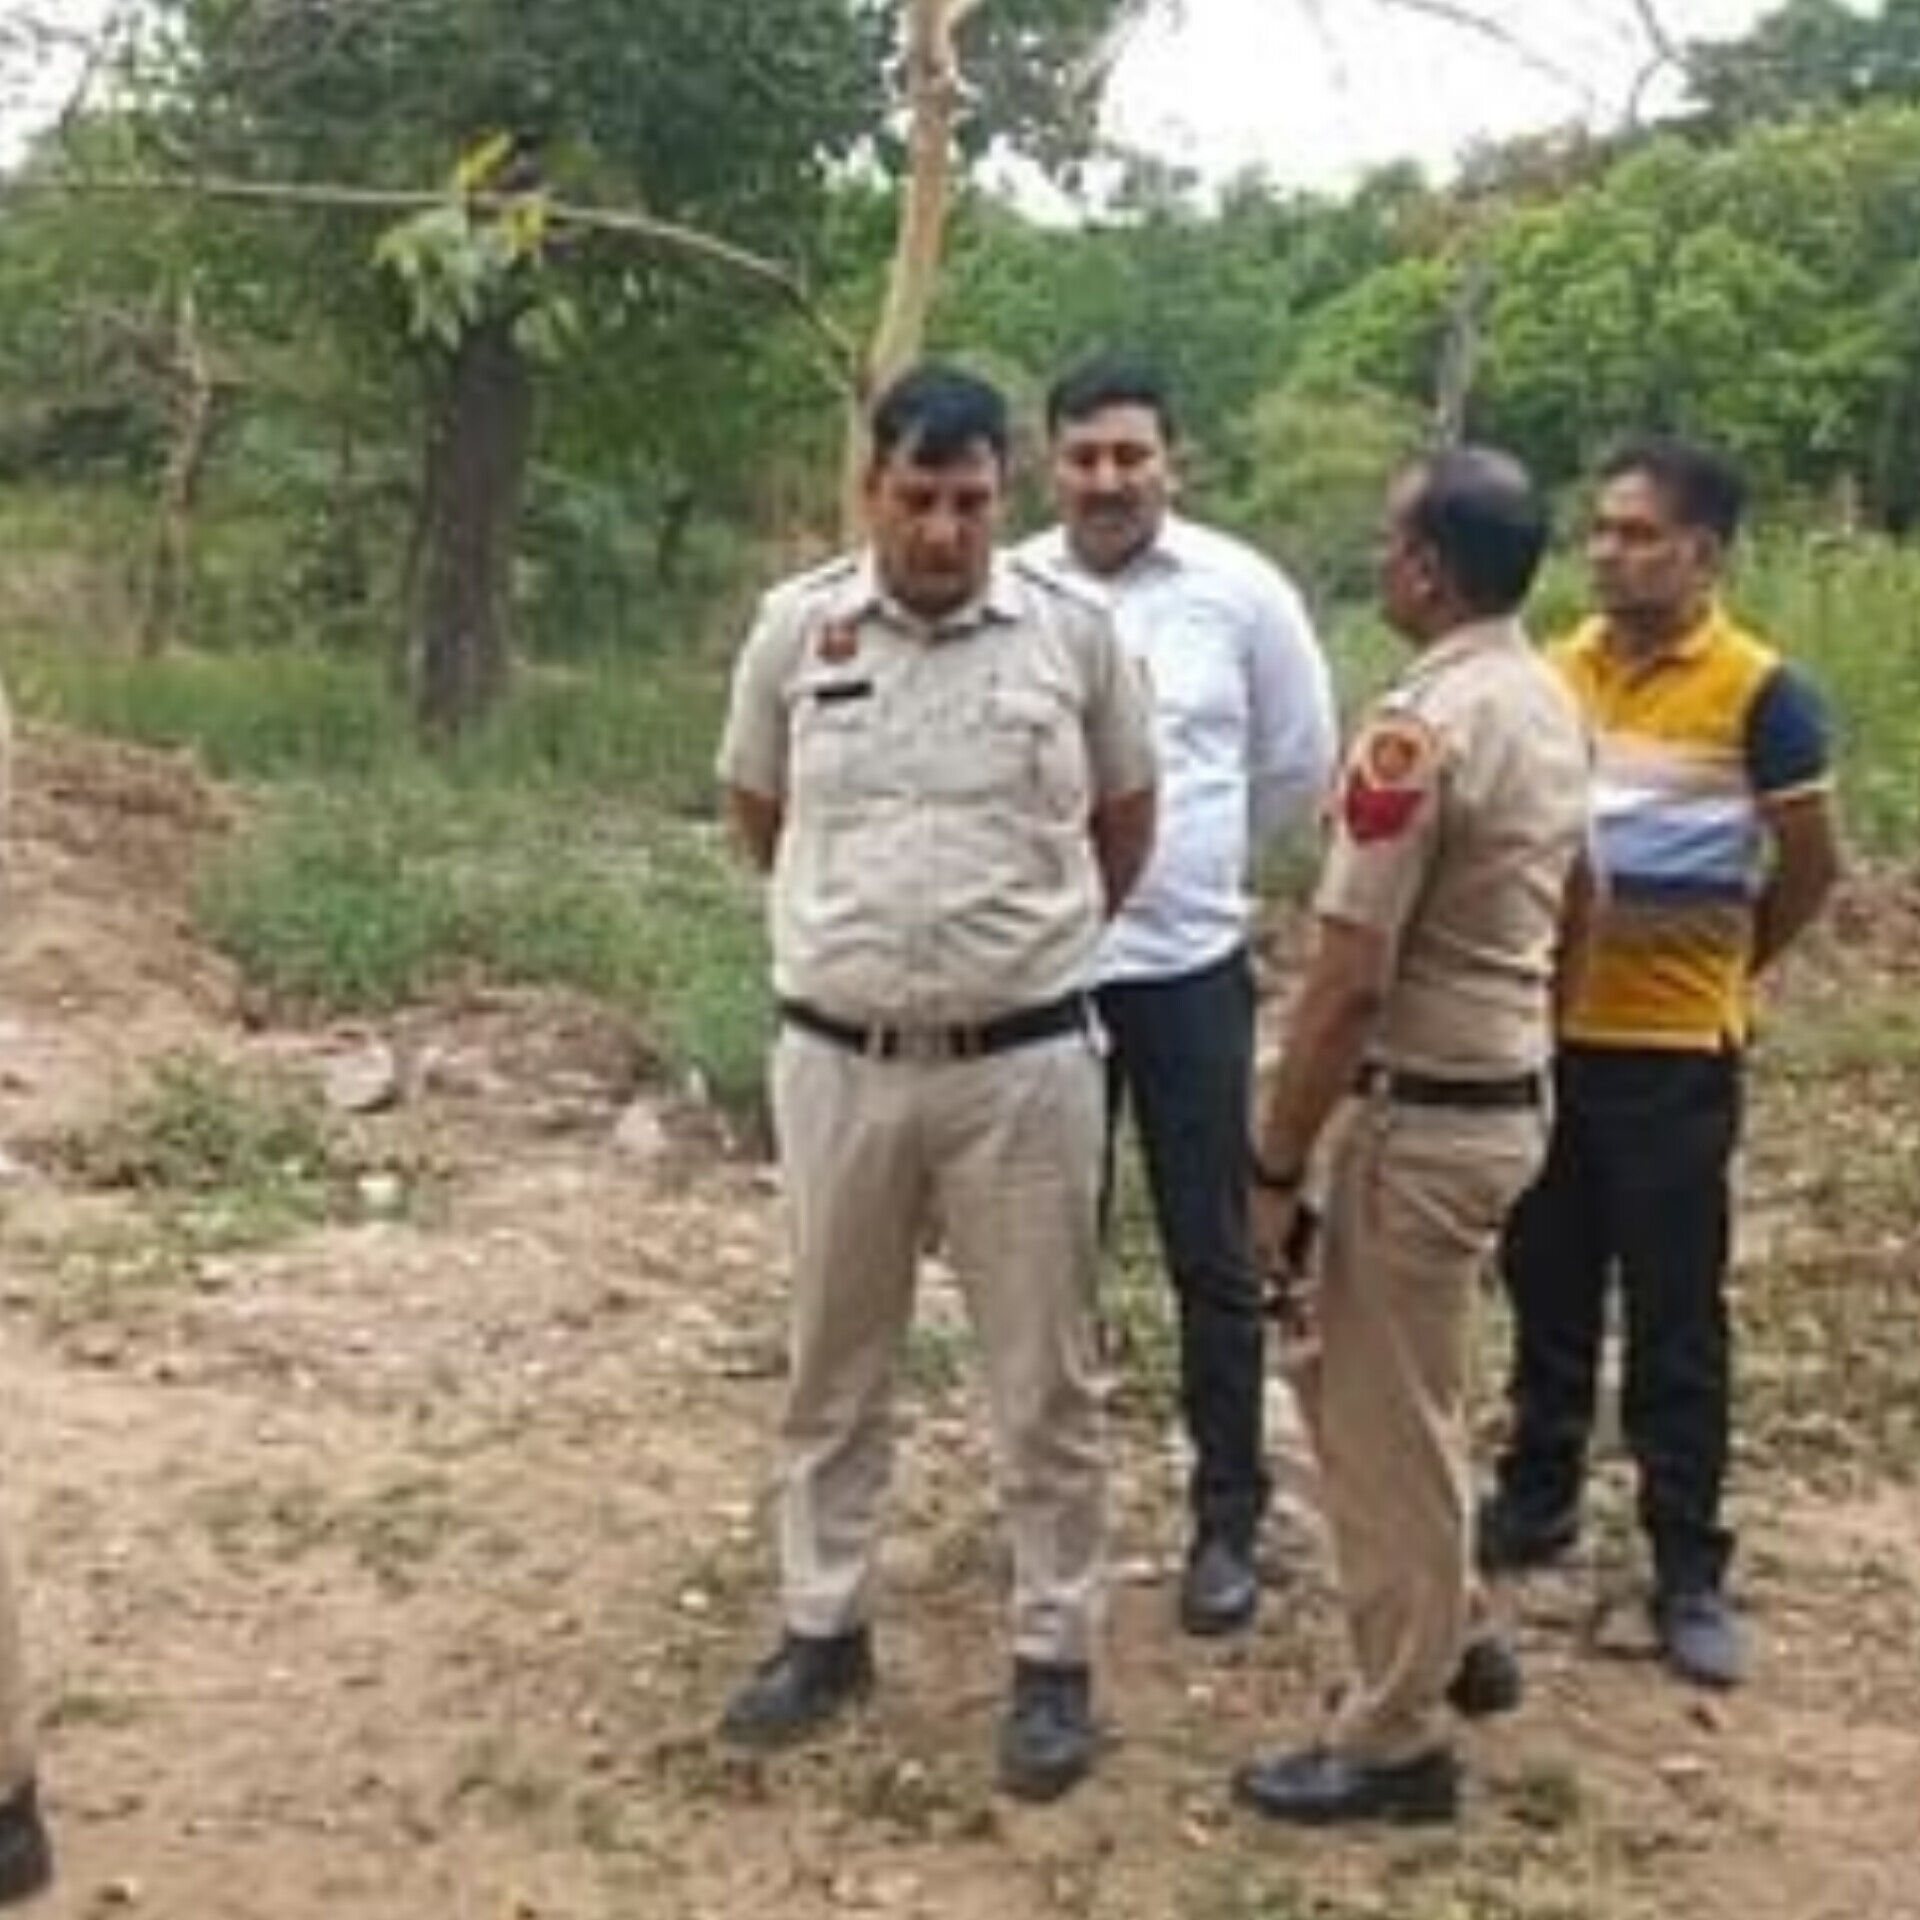 चंडीगढ़ में हरियाणा पुलिस के एसपीओ का शव मिला, चेहरे पर गंभीर चोटें, हत्या की आशंका